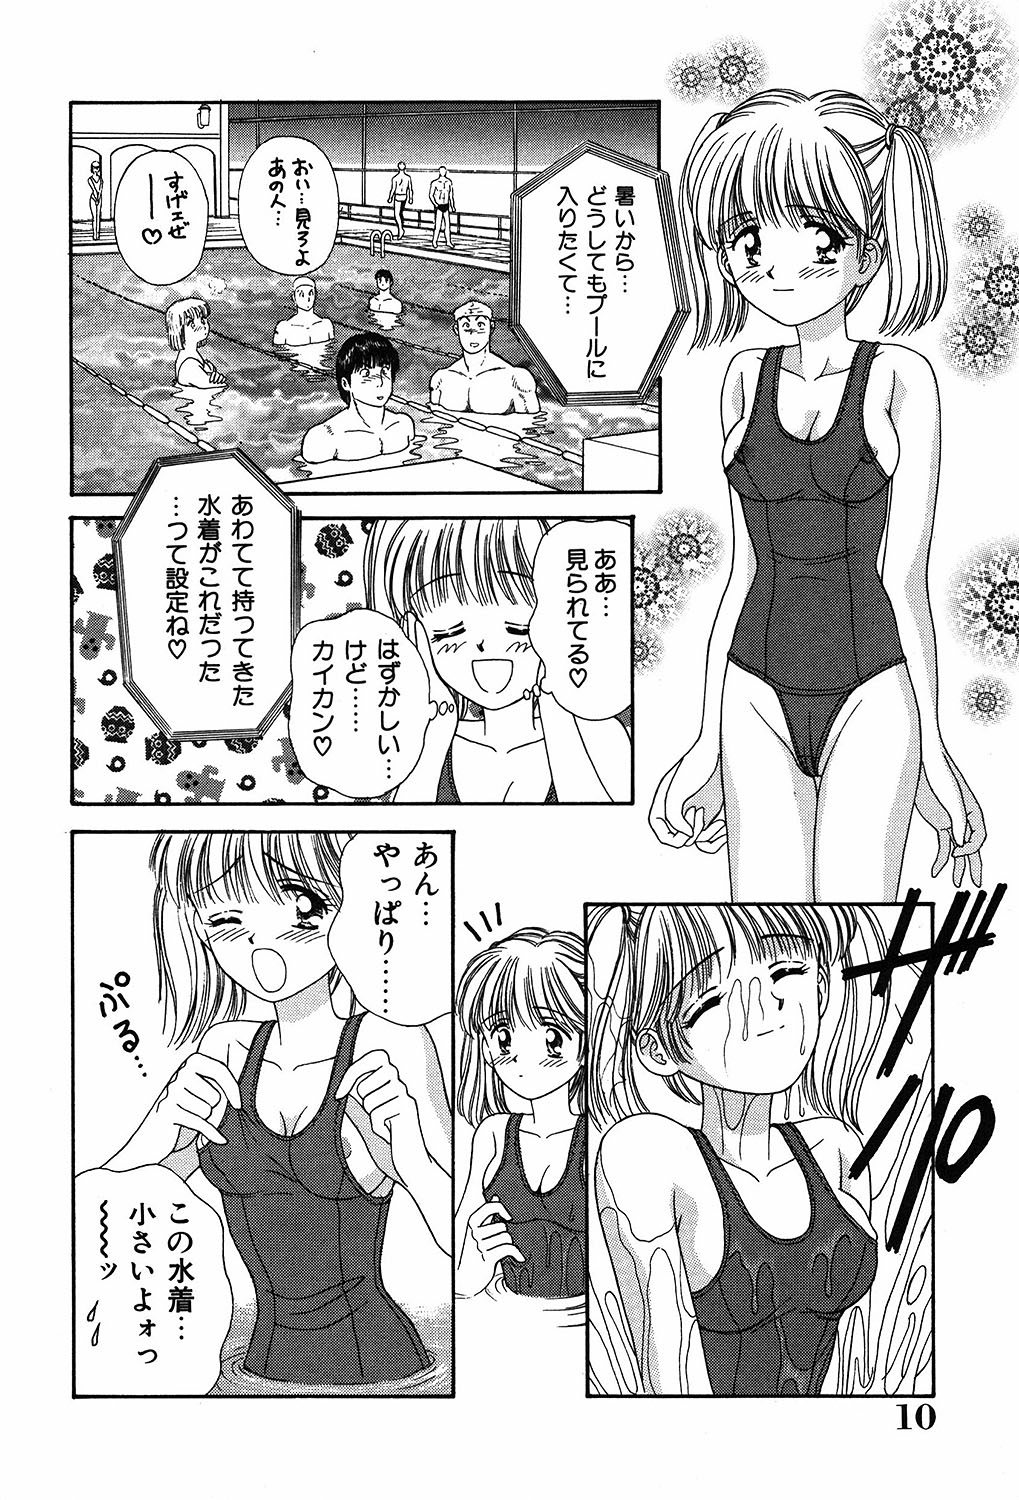 [Ayumi] Daisuki page 10 full